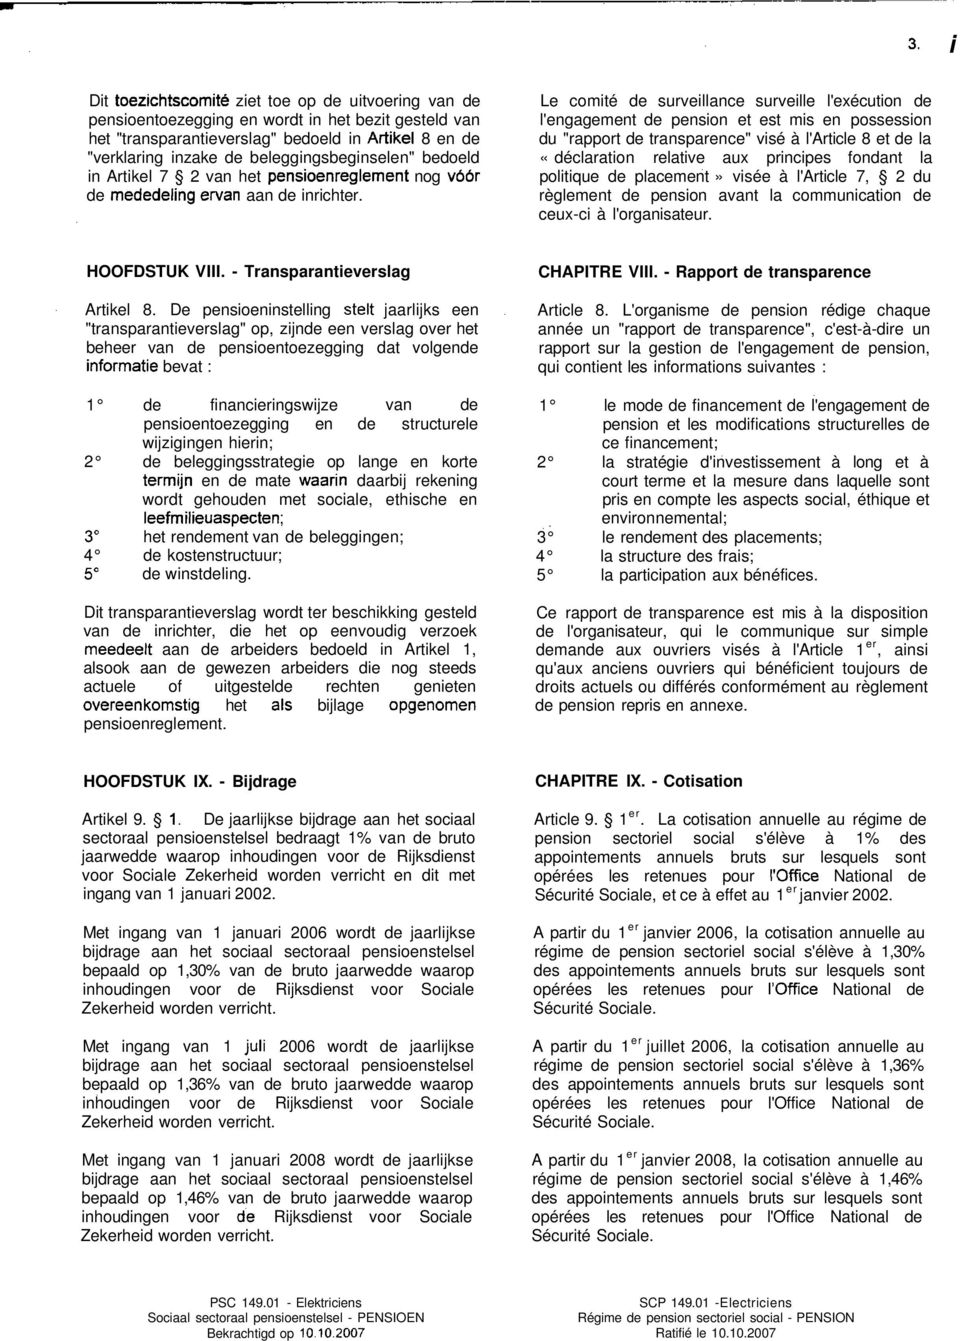 Le comité de surveillance surveille l'exécution de l'engagement de pension et est mis en possession du "rapport de transparence" visé à l'article 8 et de la «déclaration relative aux principes